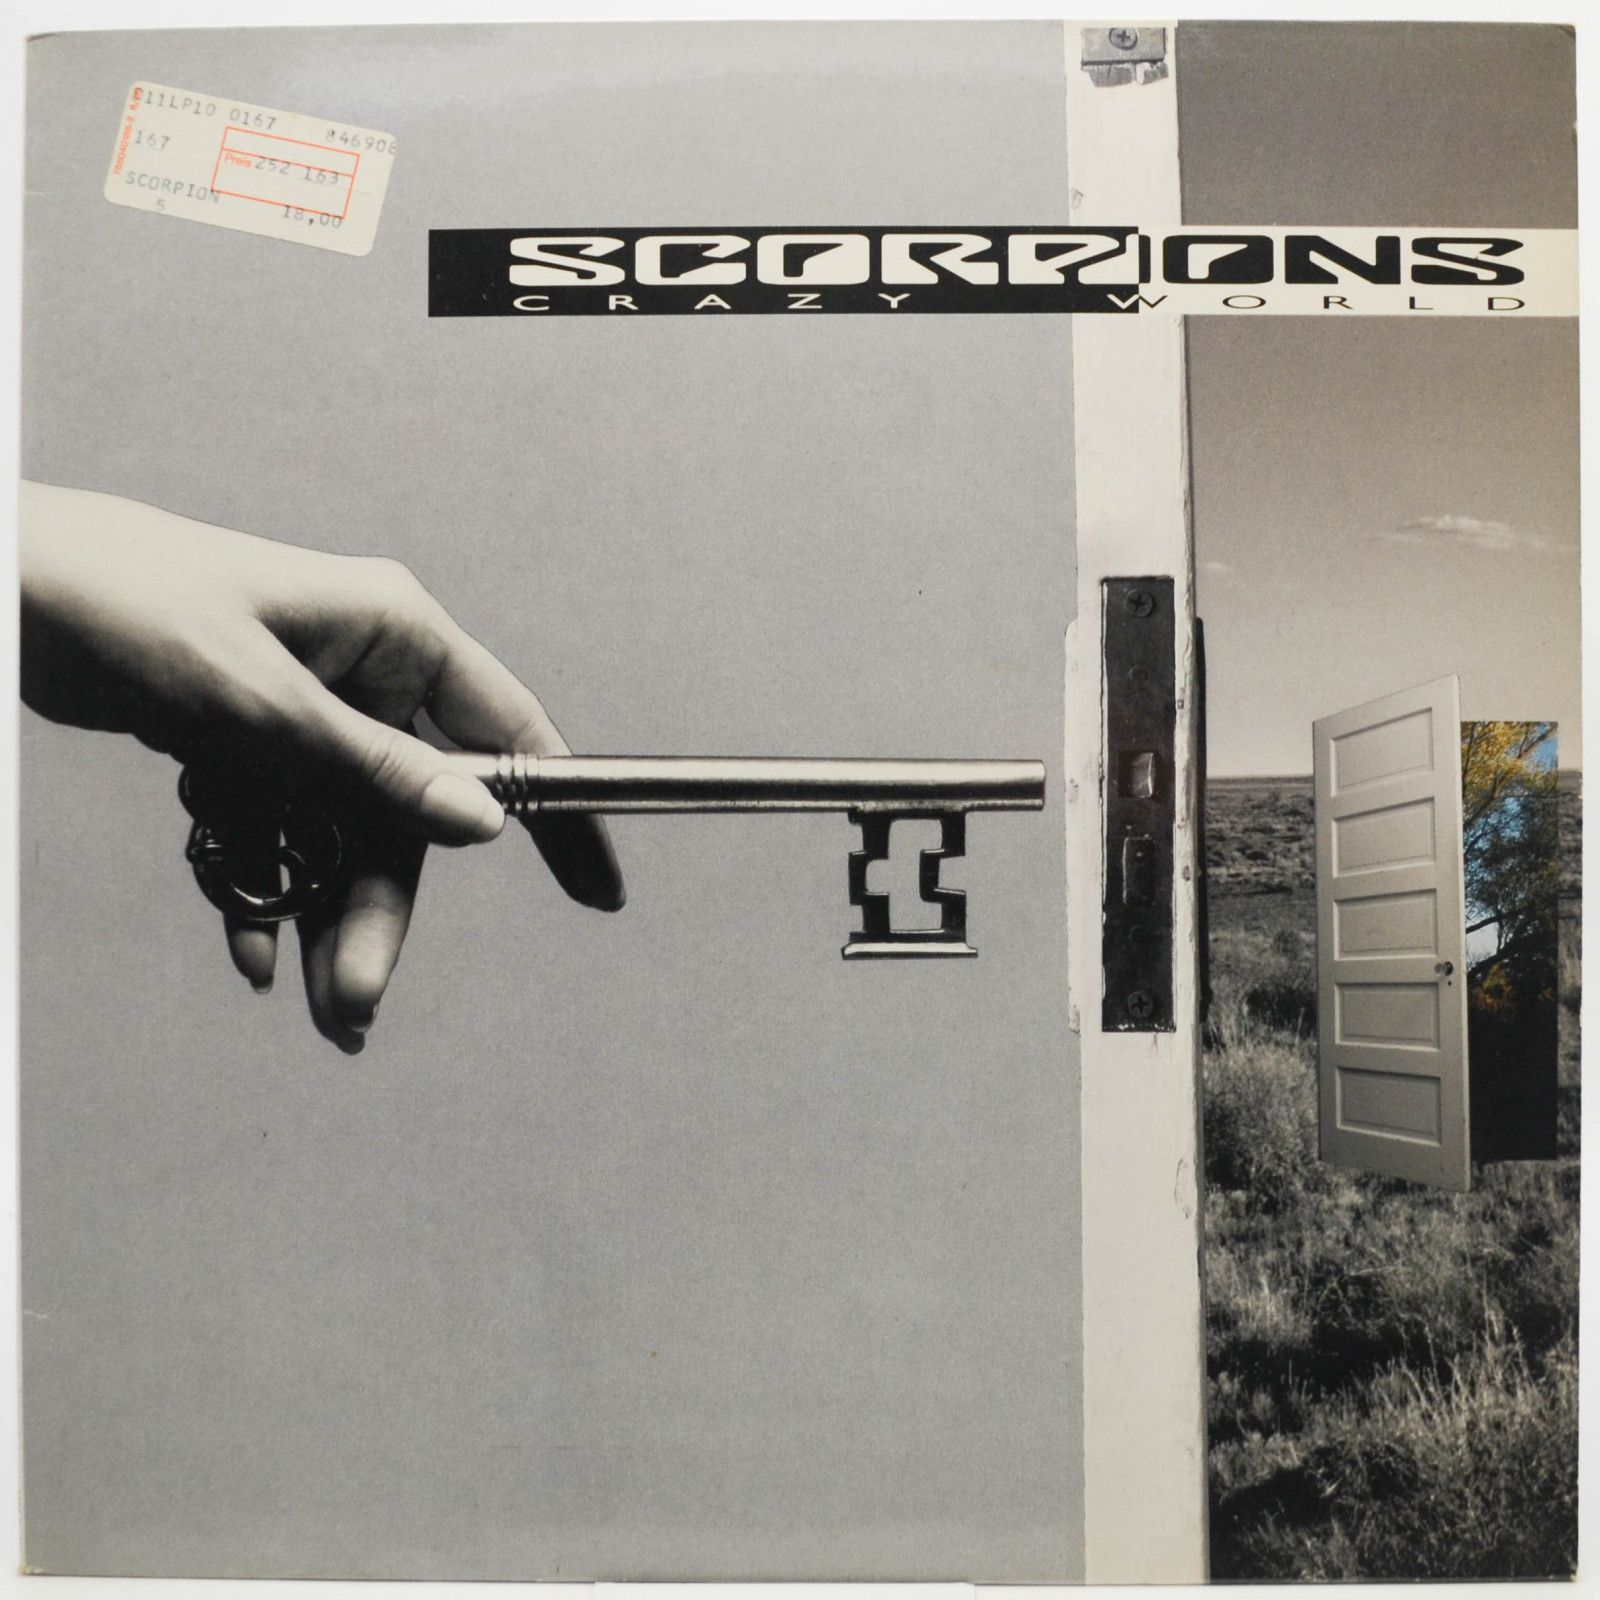 Scorpions — Crazy World, 1990